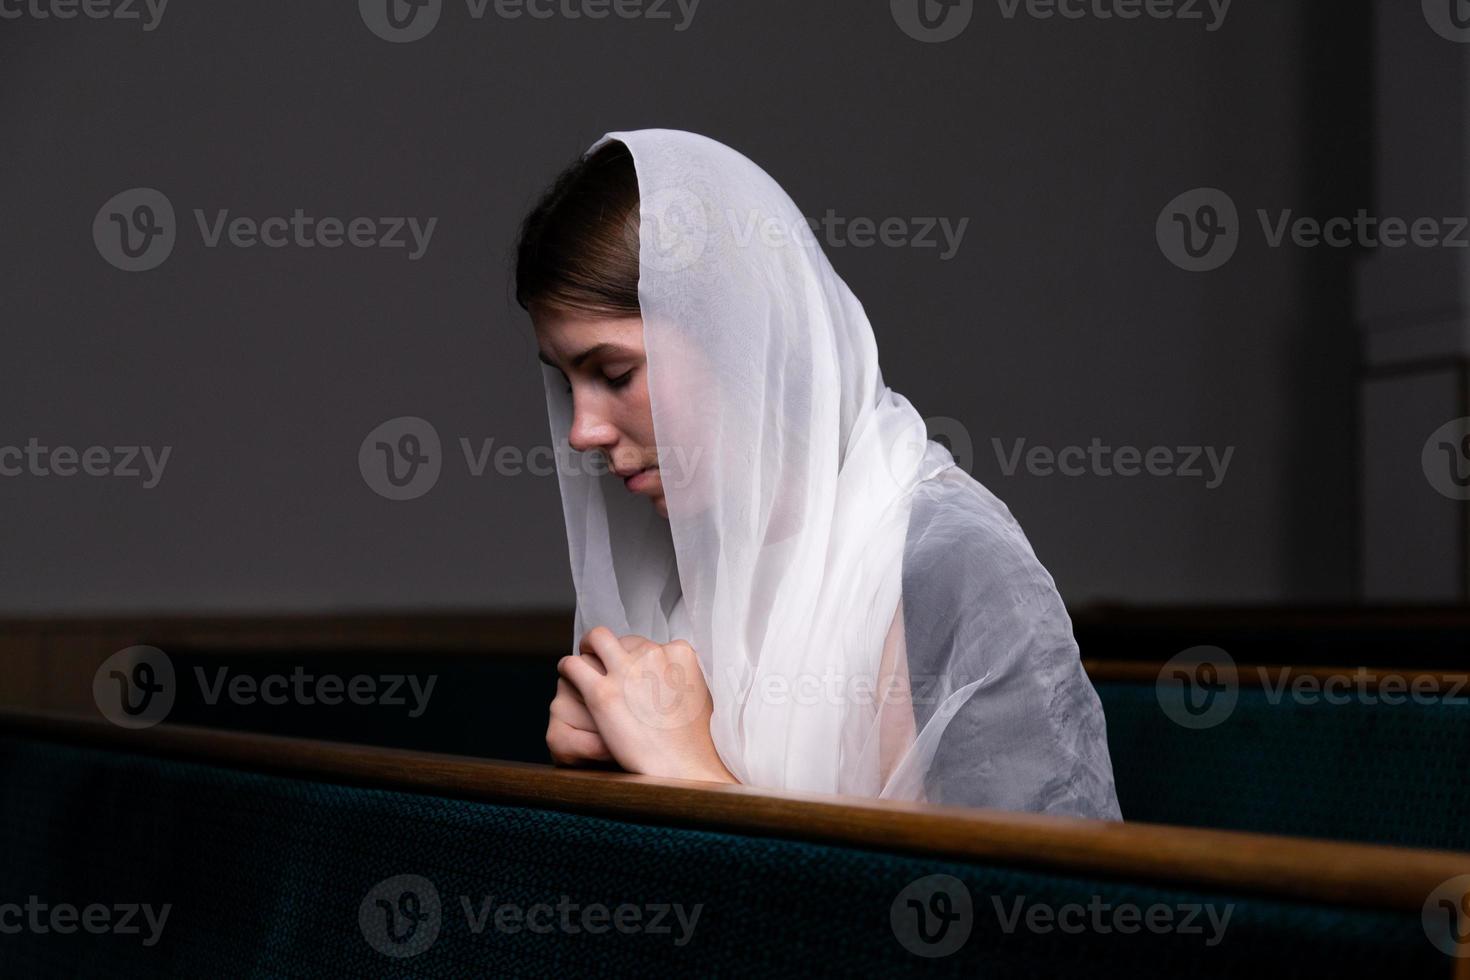 una ragazza cristiana in camicia bianca sta pregando con cuore umile nella chiesa foto